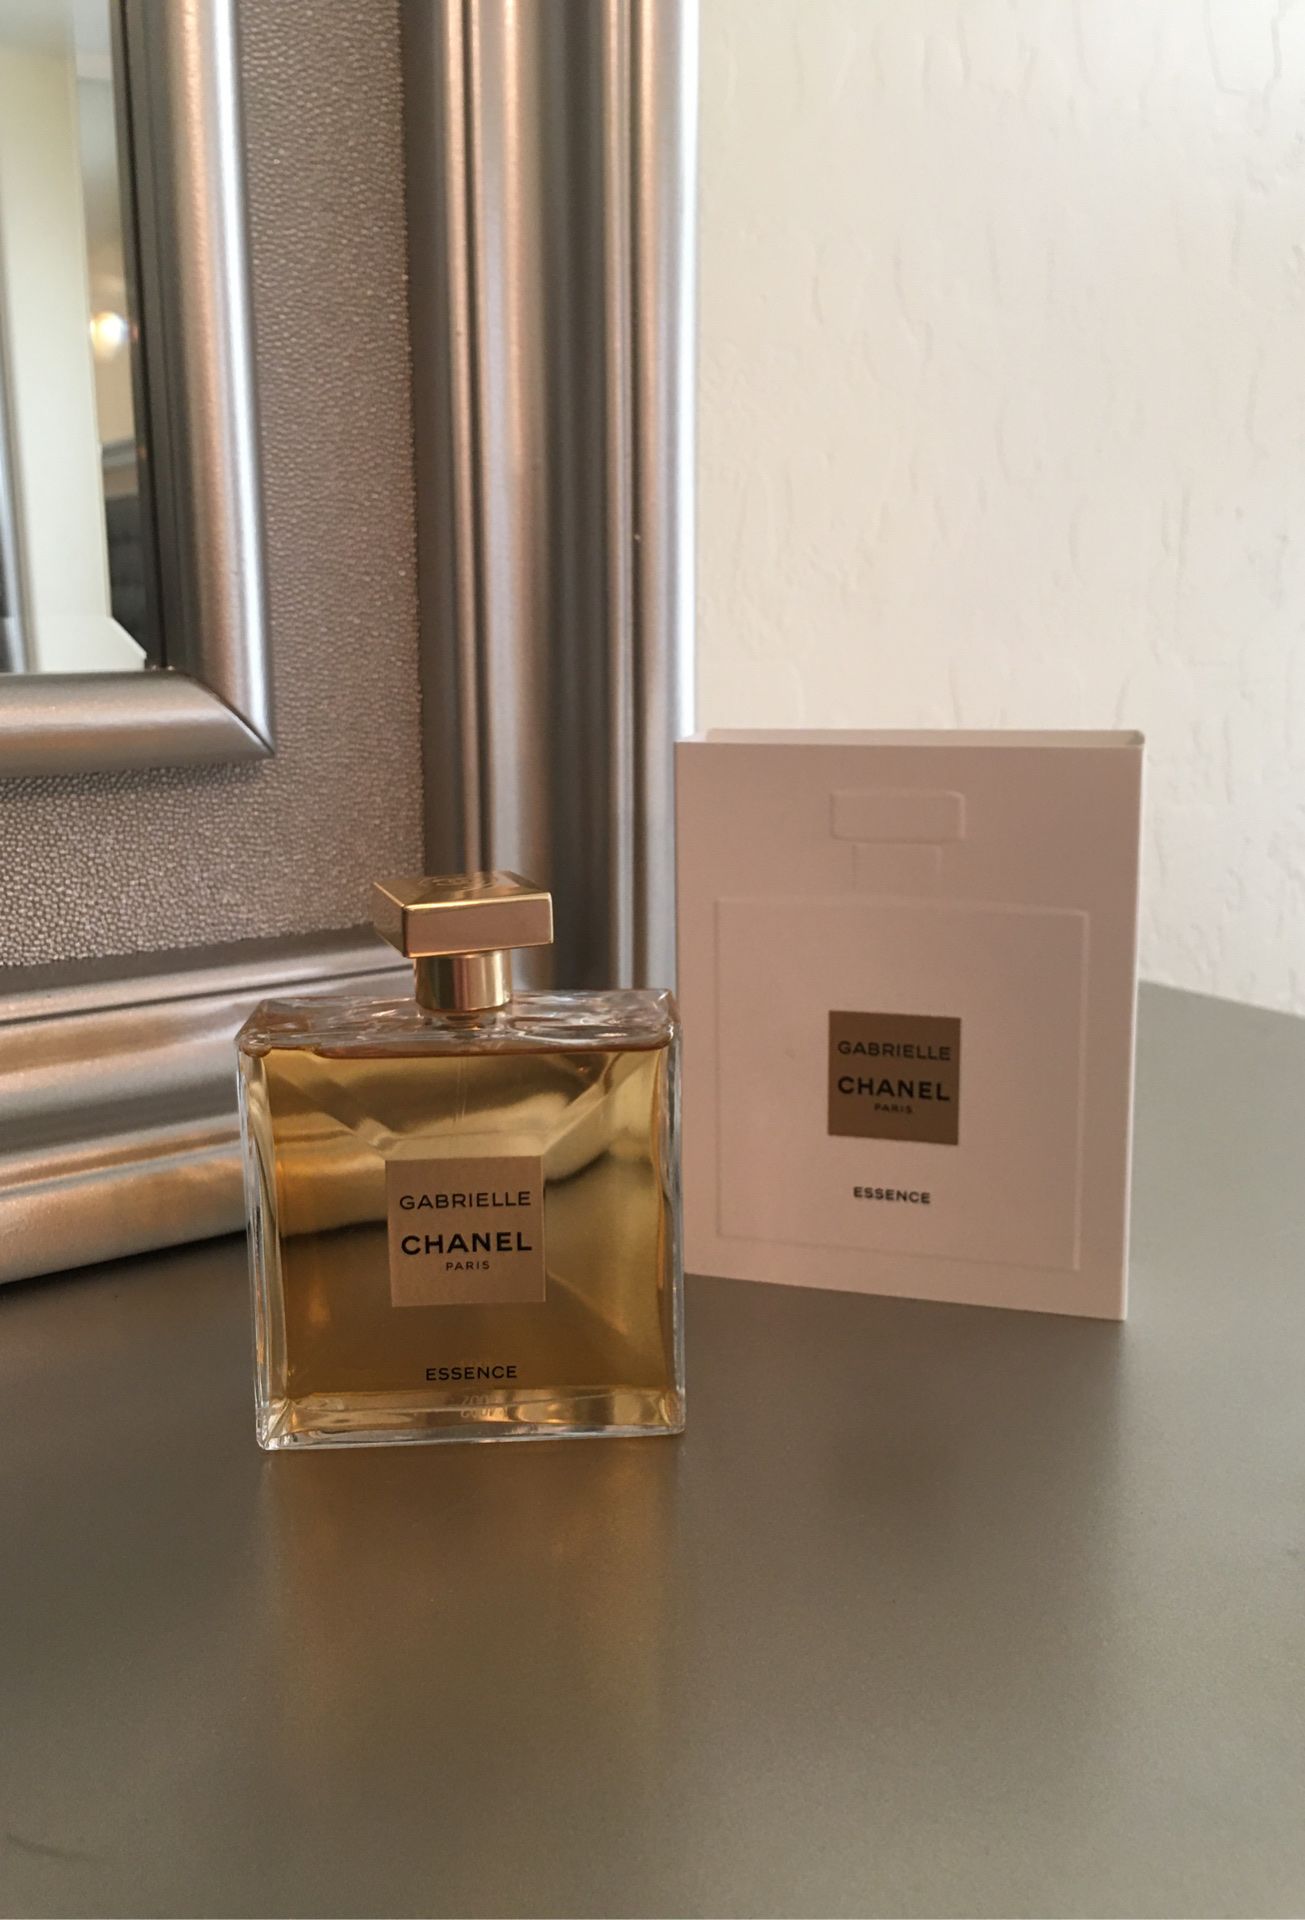 Gabrielle Chanel perfume